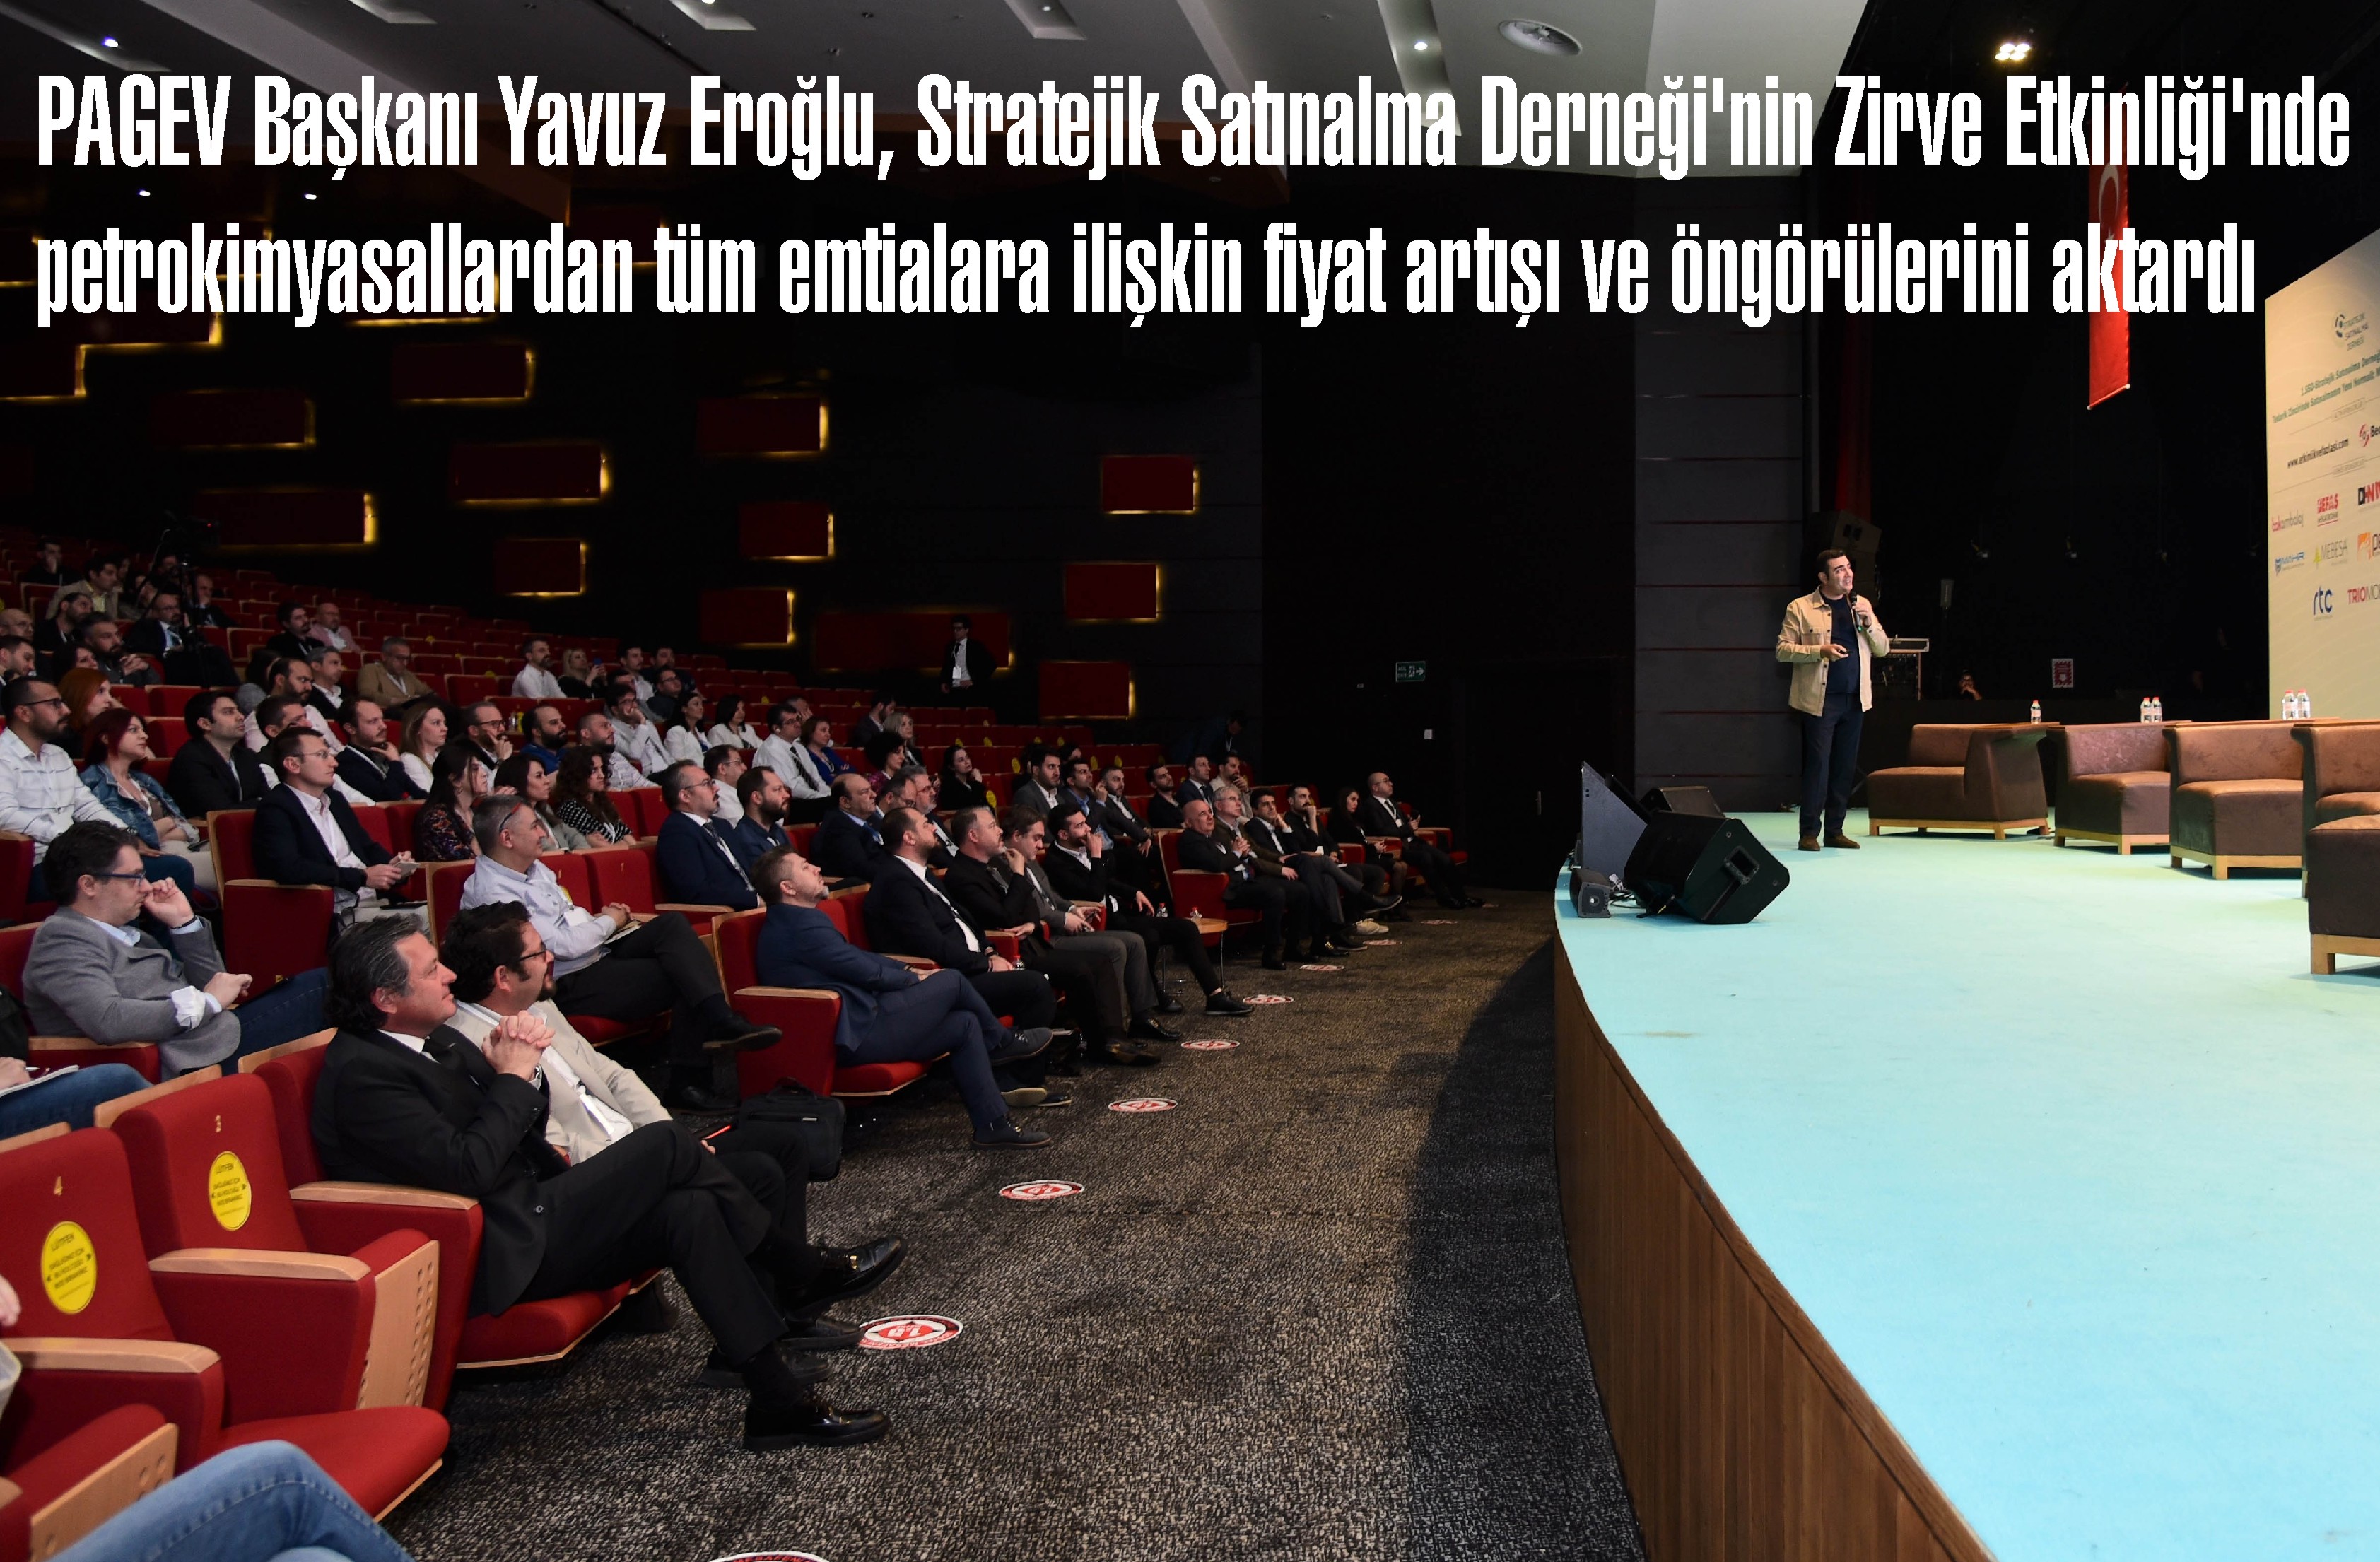 Yavuz Eroğlu, Stratejik Satınalma Derneği’nin Zirve Etkinliği’nde petrokimyasallardan tüm emtialara ilişkin fiyat artışı ve öngörülerini aktardı